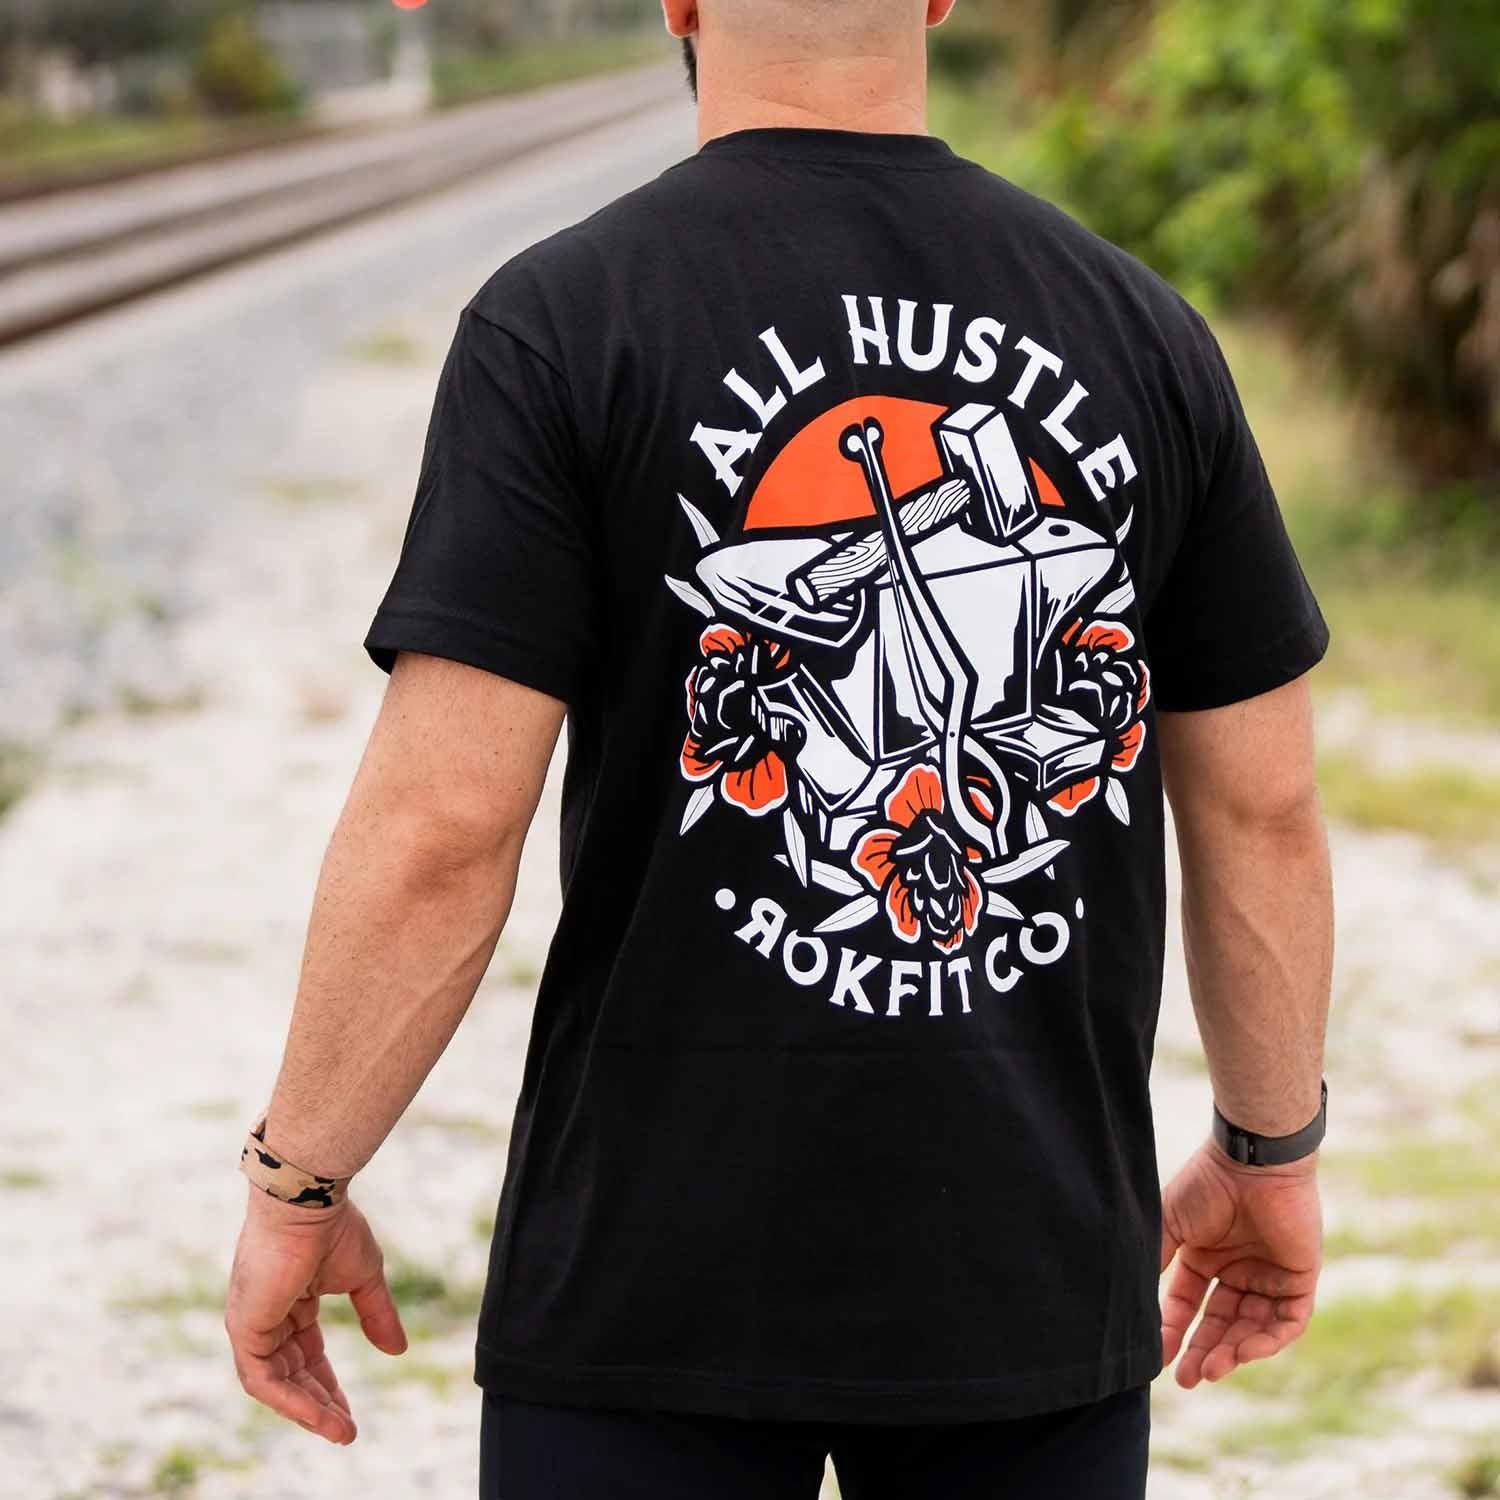 Camiseta All Hustle